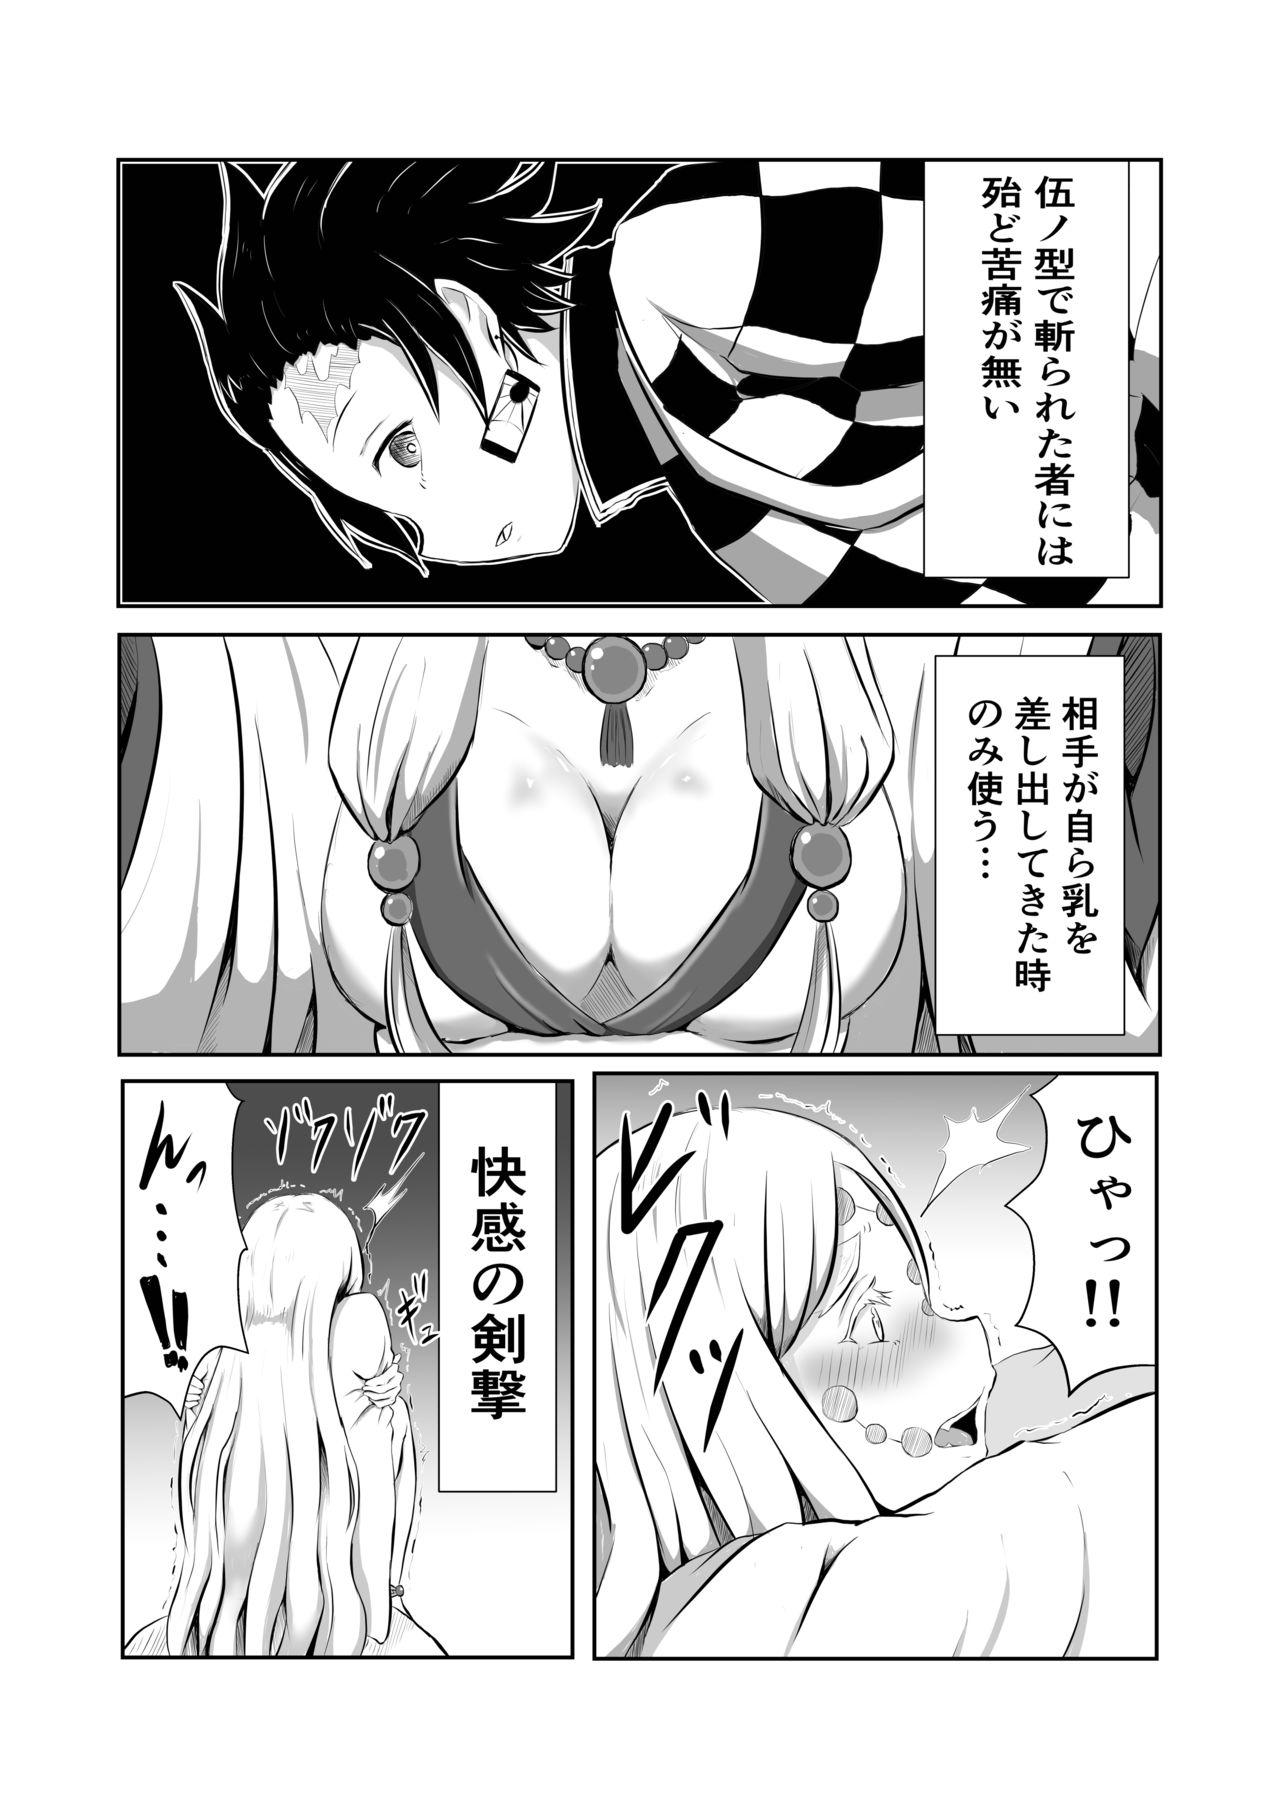 Rough Porn Hinokami Sex. - Kimetsu no yaiba | demon slayer Hot Naked Women - Page 4